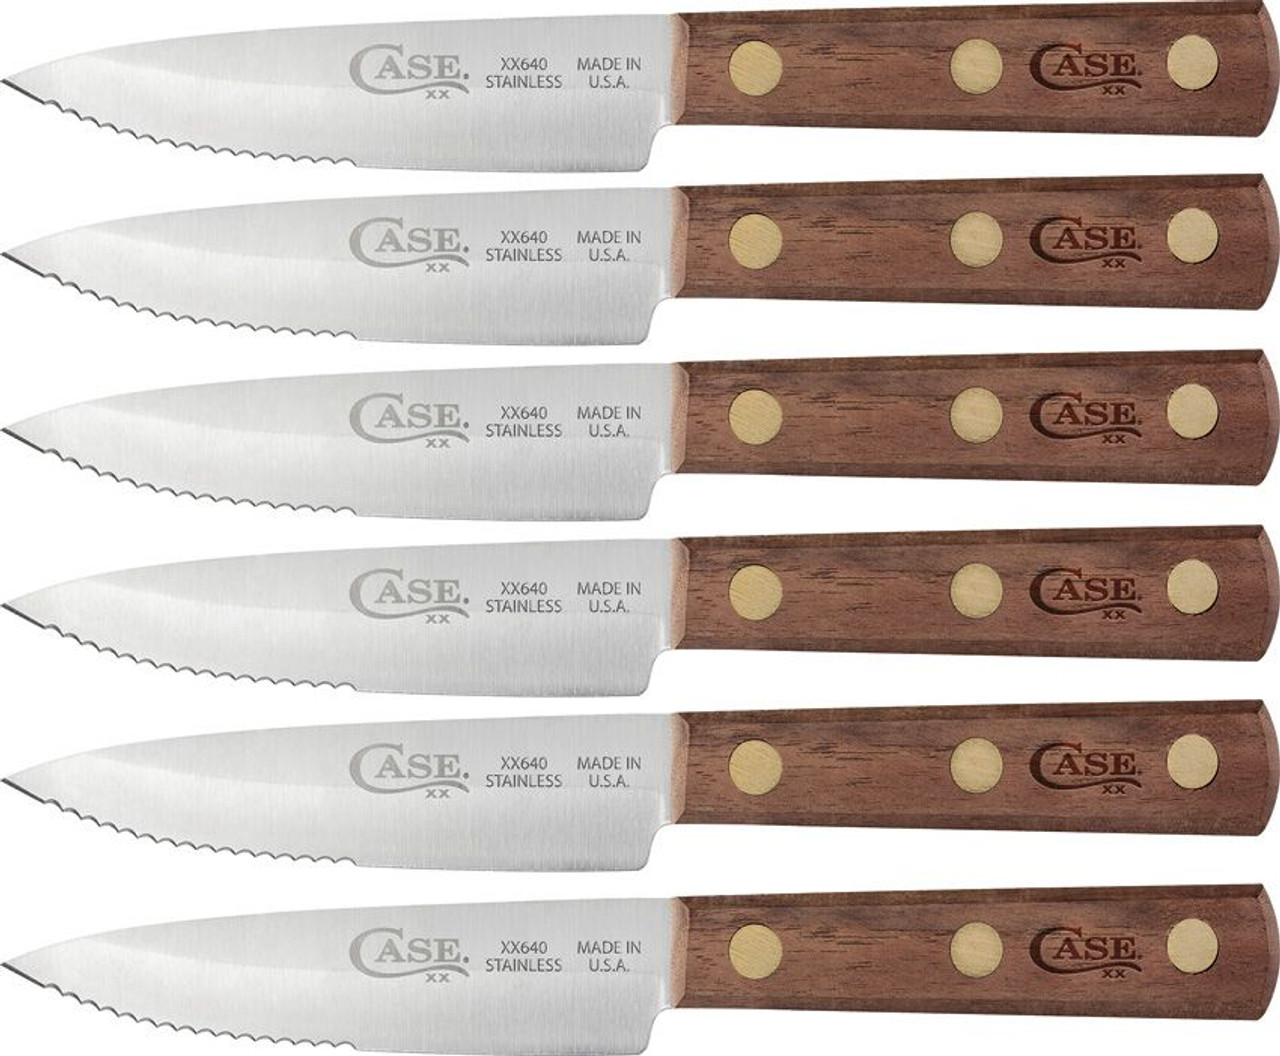 Case 6 Piece Walnut Steak Knife Set - Red Hill Cutlery